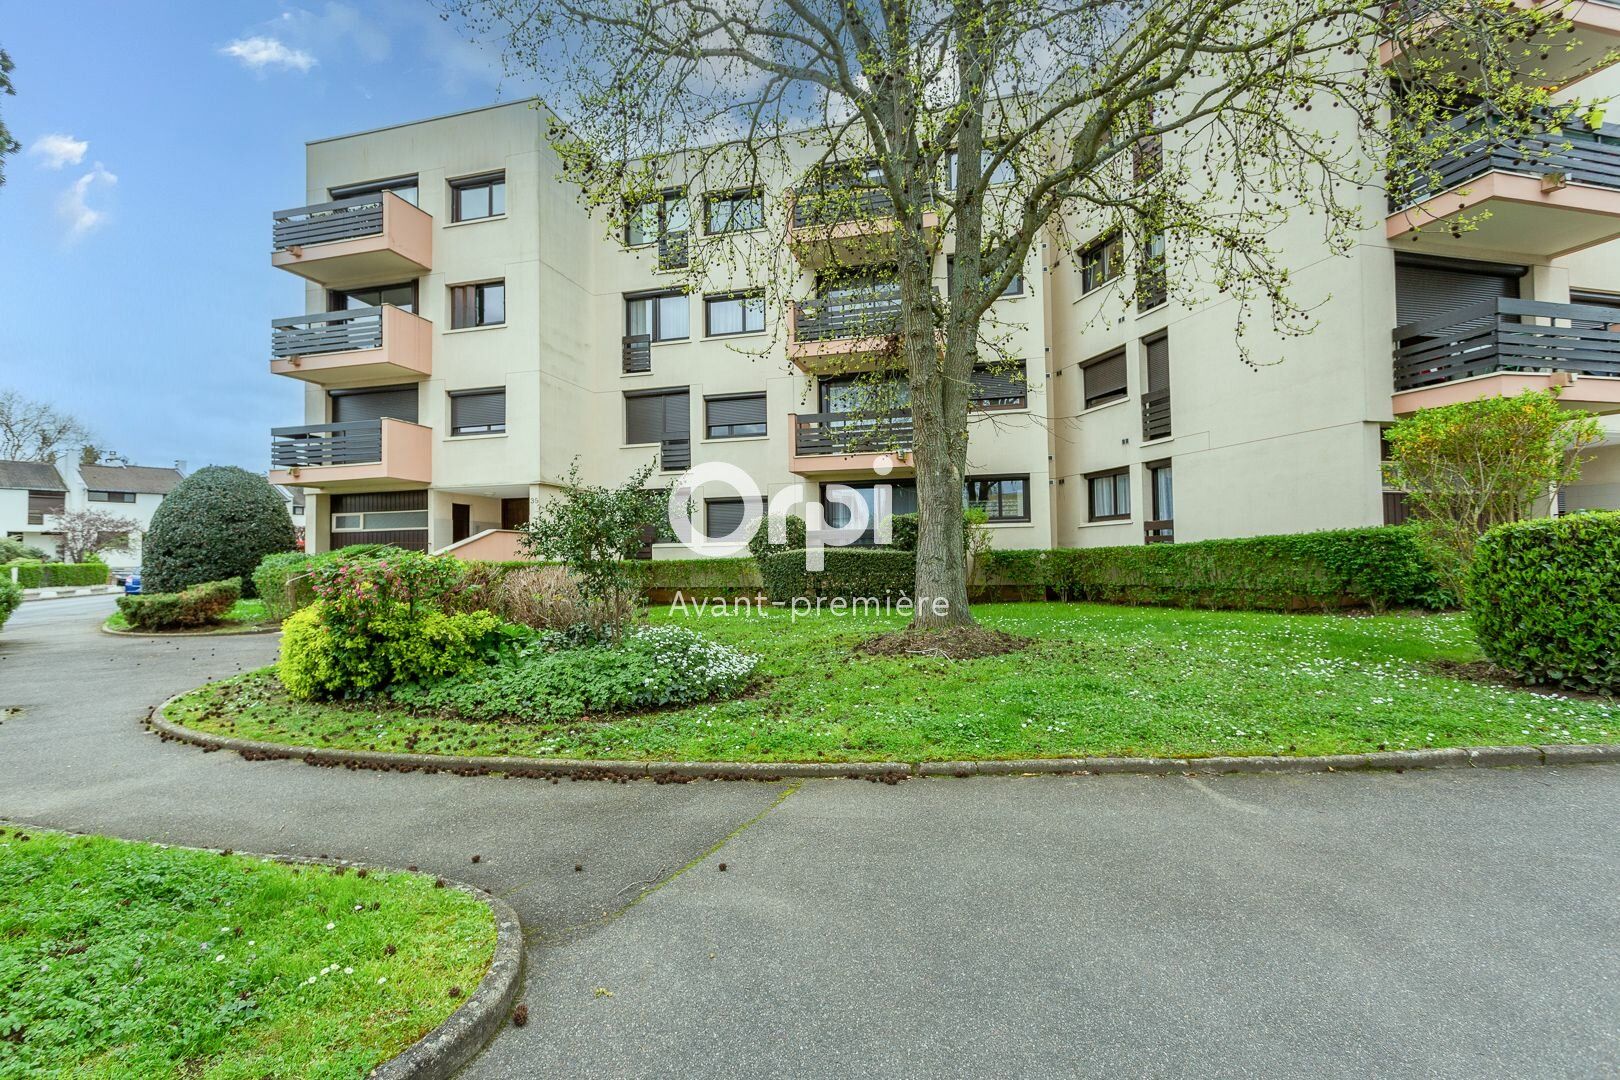 Appartement à vendre 4 88.49m2 à Saint-Michel-sur-Orge vignette-1